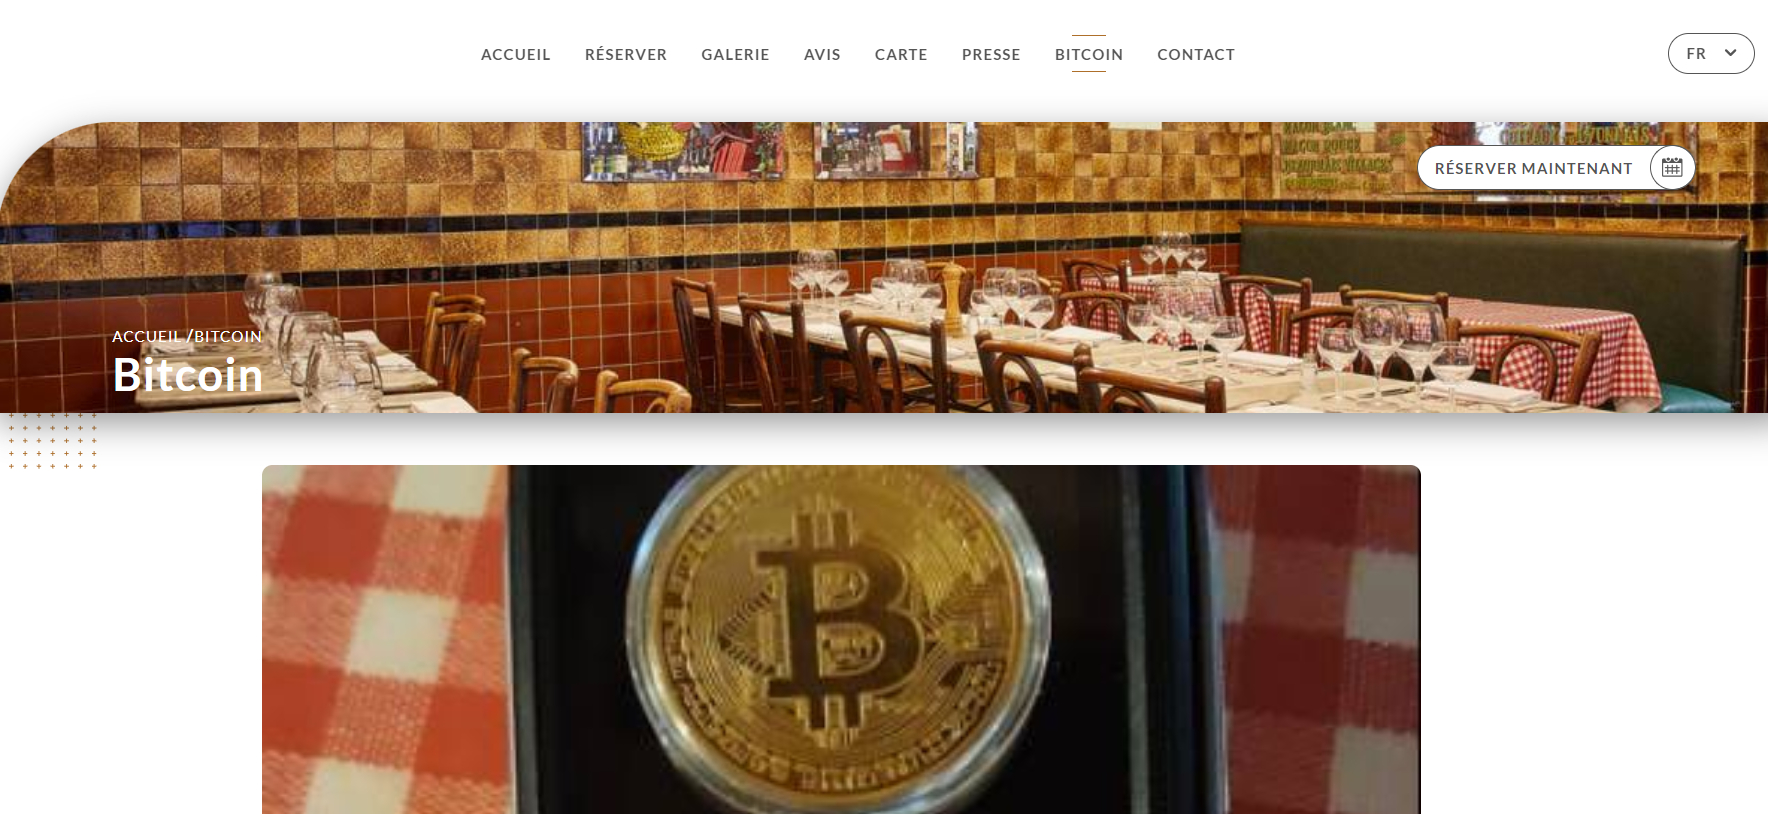 Una pagina dedicata a Bitcoin sul sito di un ristorante.